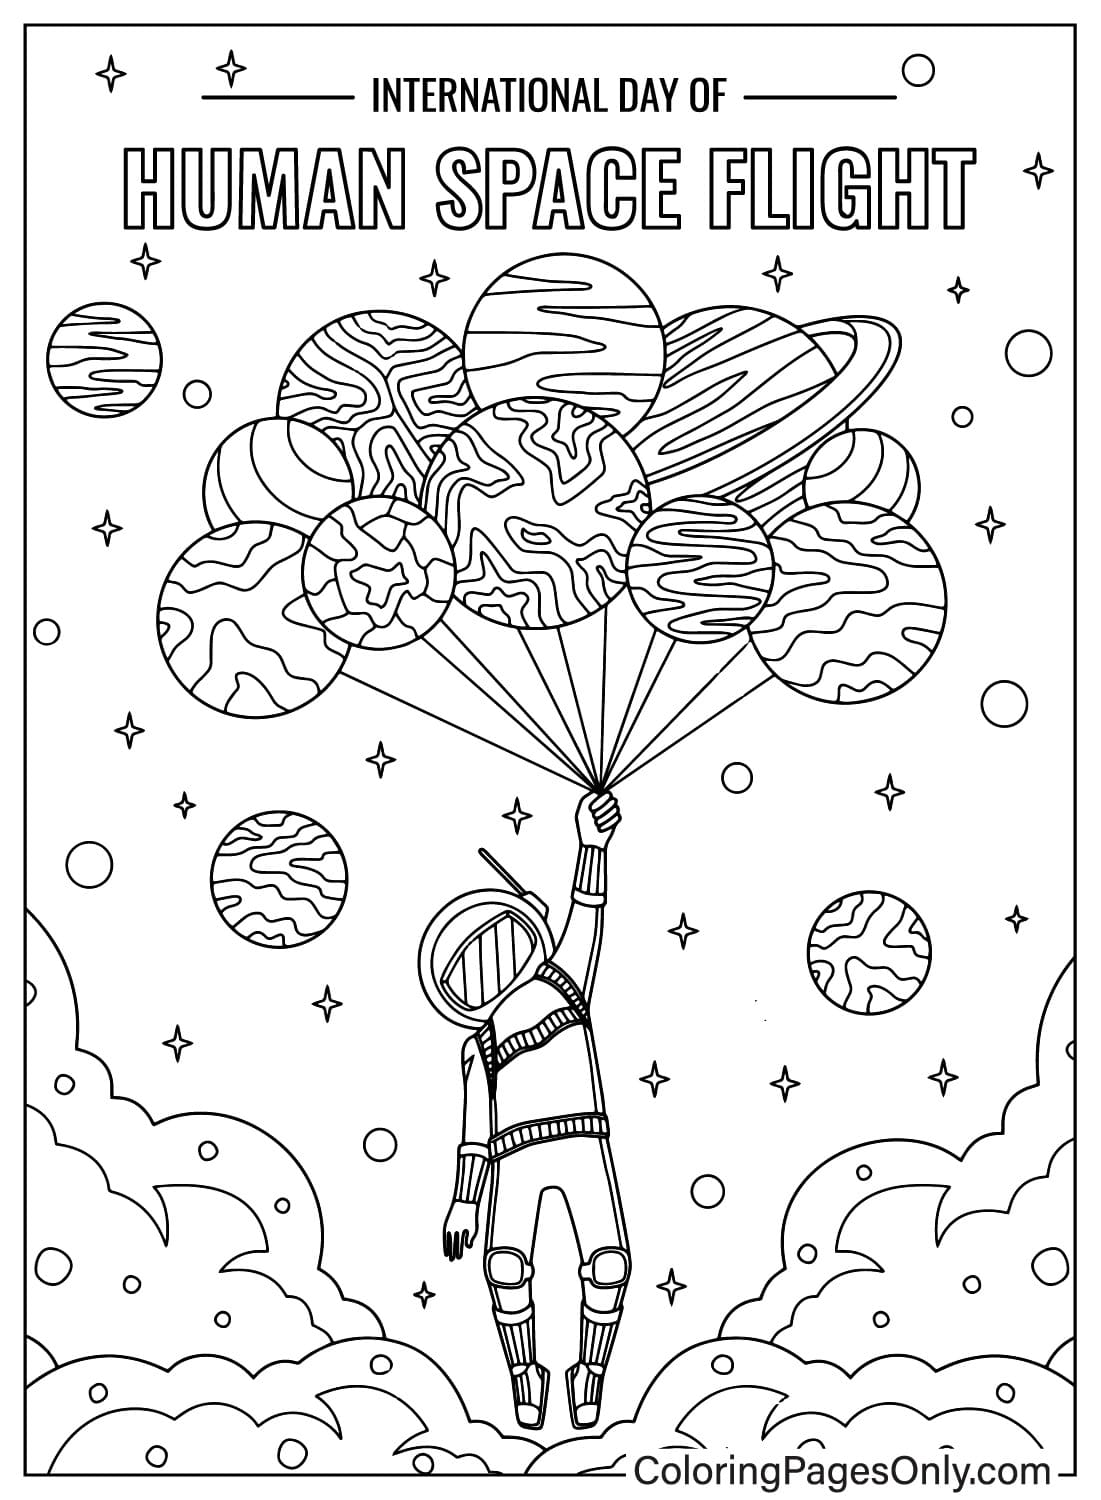 Página para colorir do Dia Internacional do Voo Espacial Humano do Dia Internacional do Voo Espacial Humano